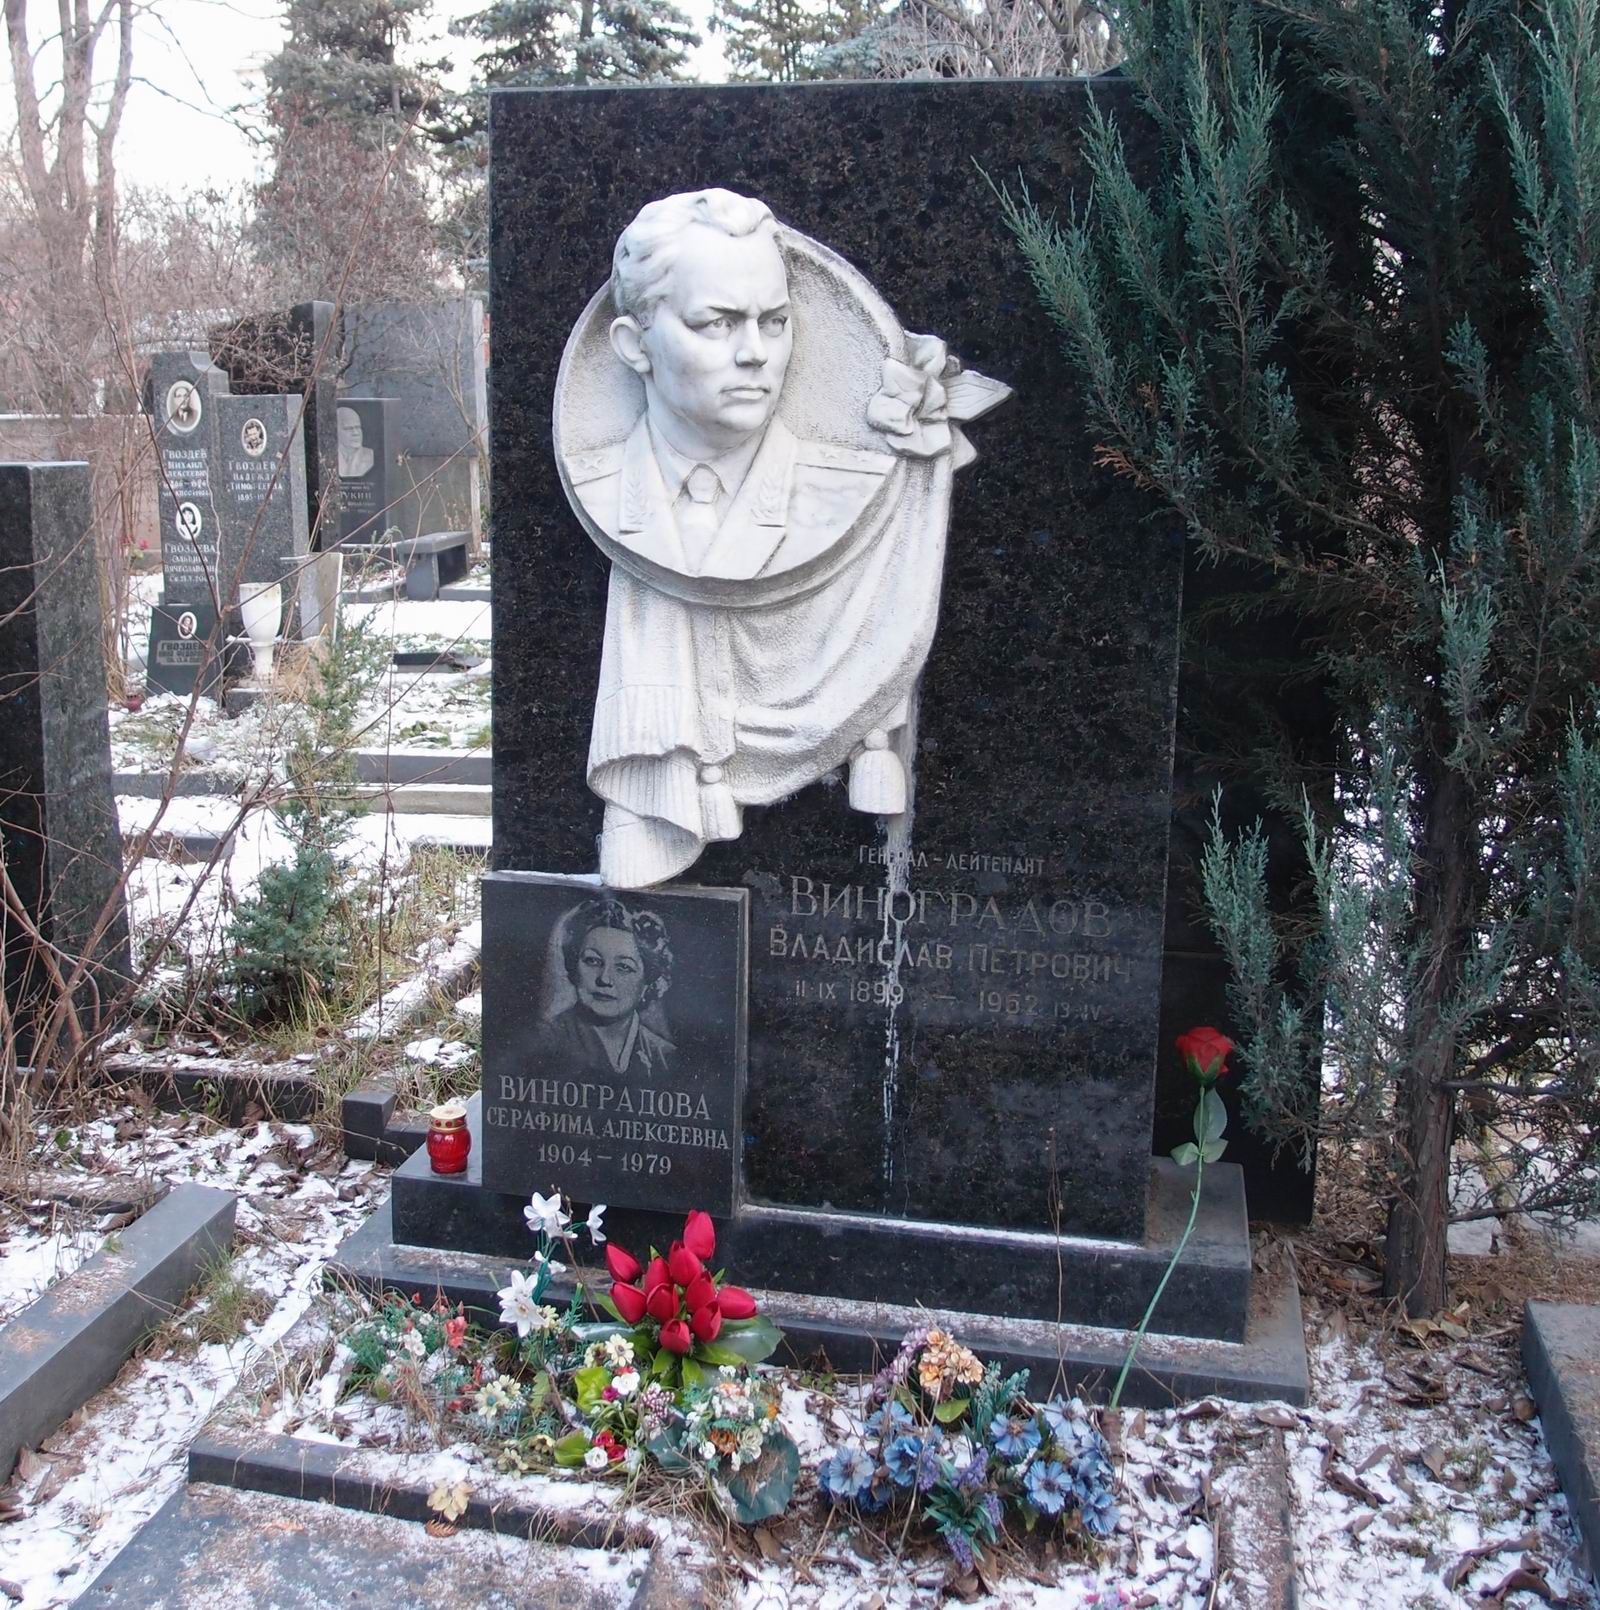 Памятник на могиле Виноградову В.П. (1899-1962), на Новодевичьем кладбище (8-15-8). Нажмите левую кнопку мыши чтобы увидеть фрагмент памятника.